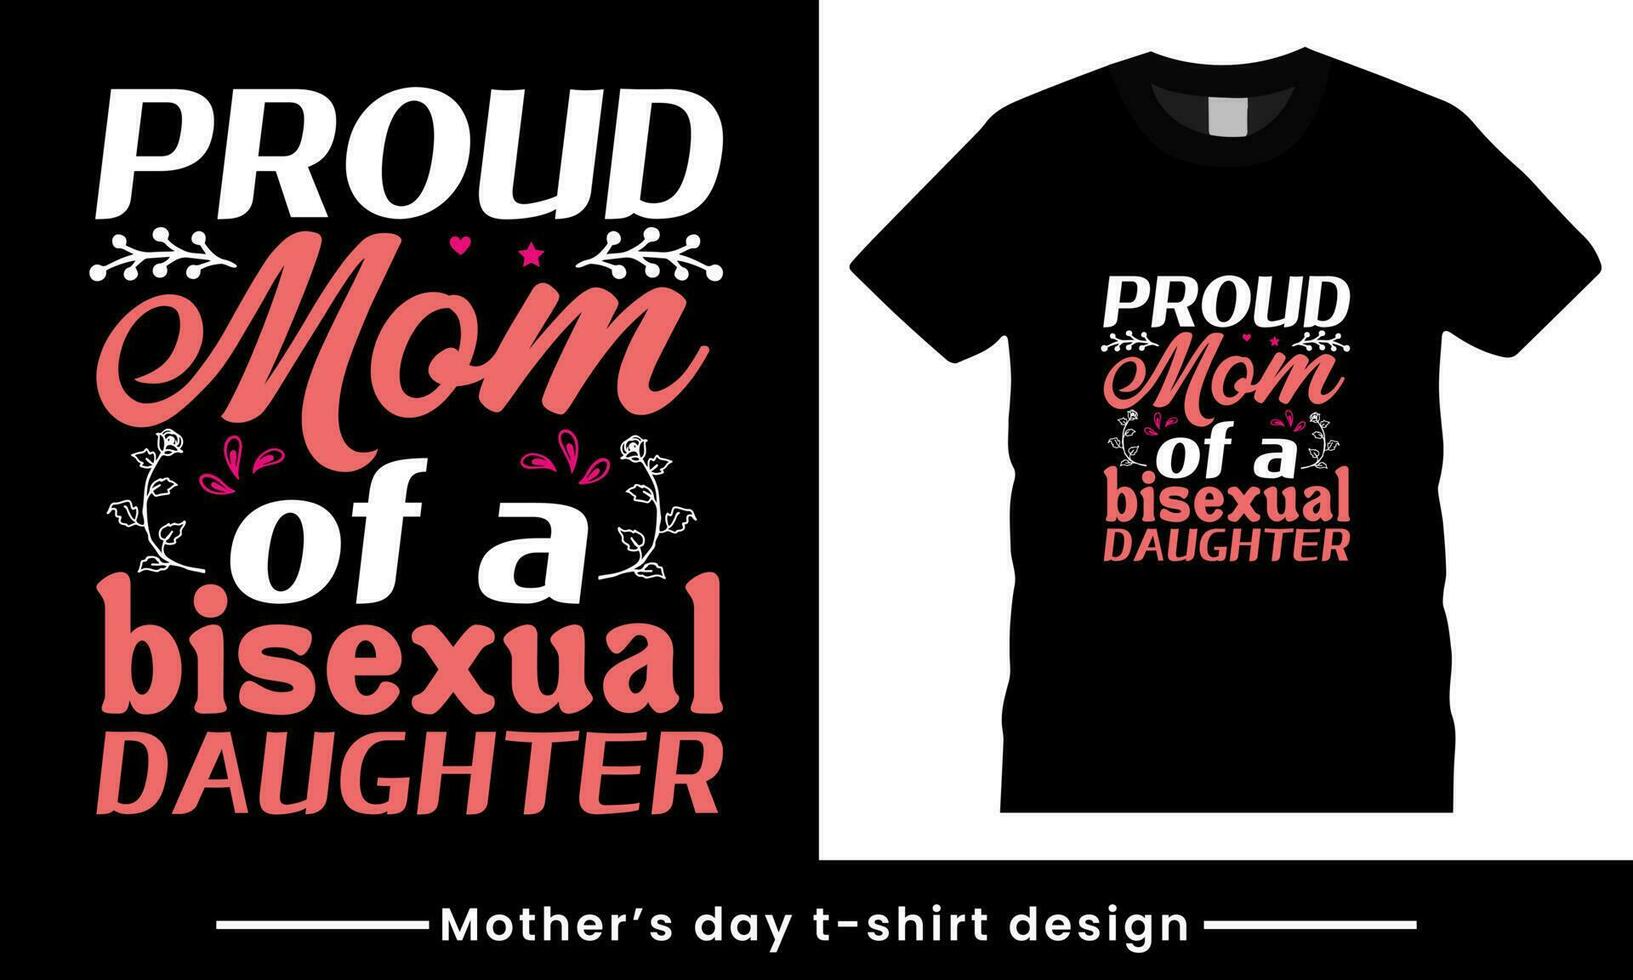 moeder dag t-shirt afdrukken met citaat. vector